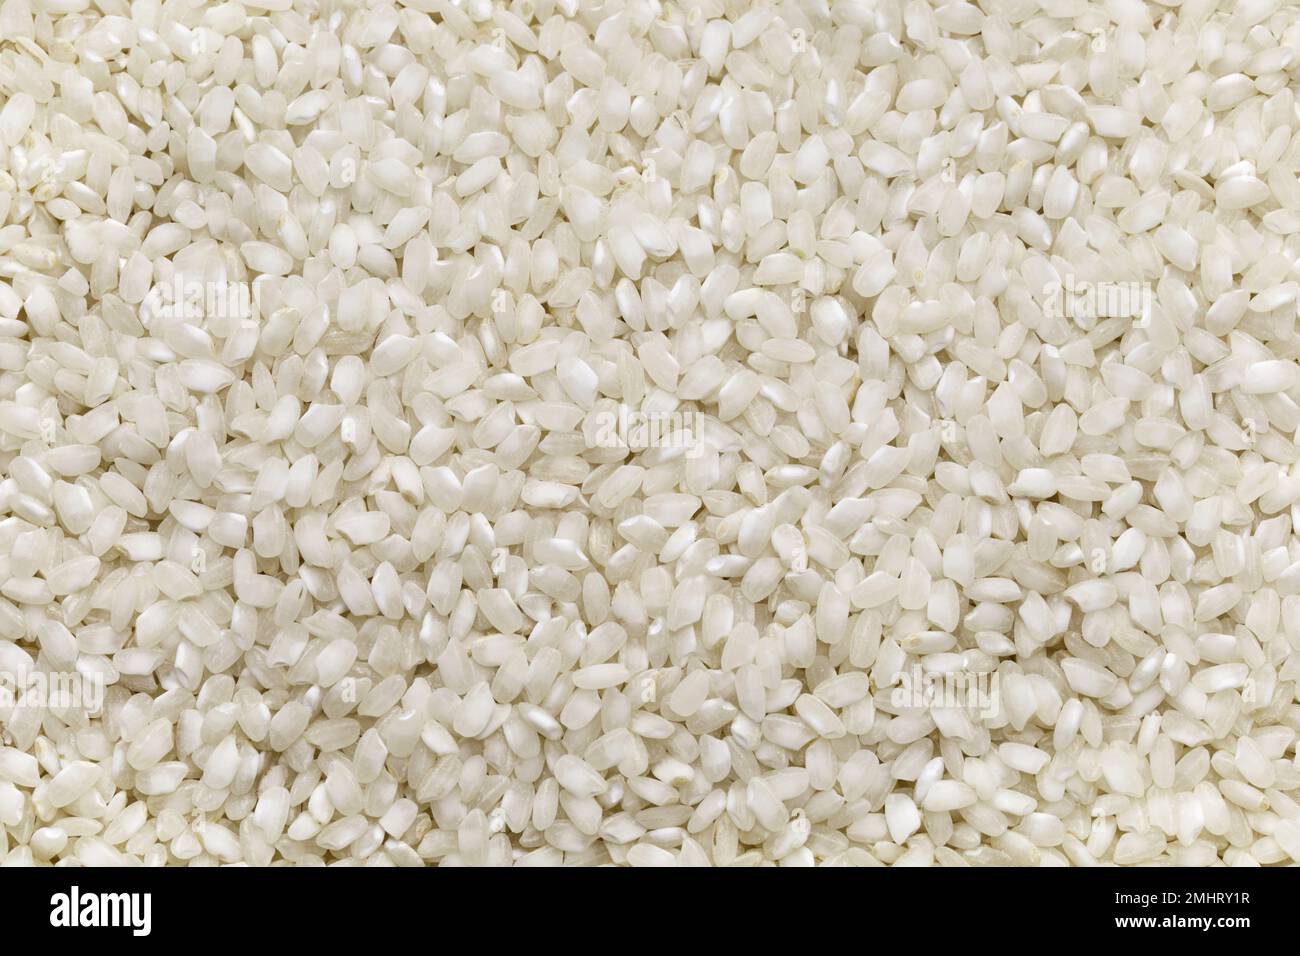 Valencian bomba rice for paella Stock Photo